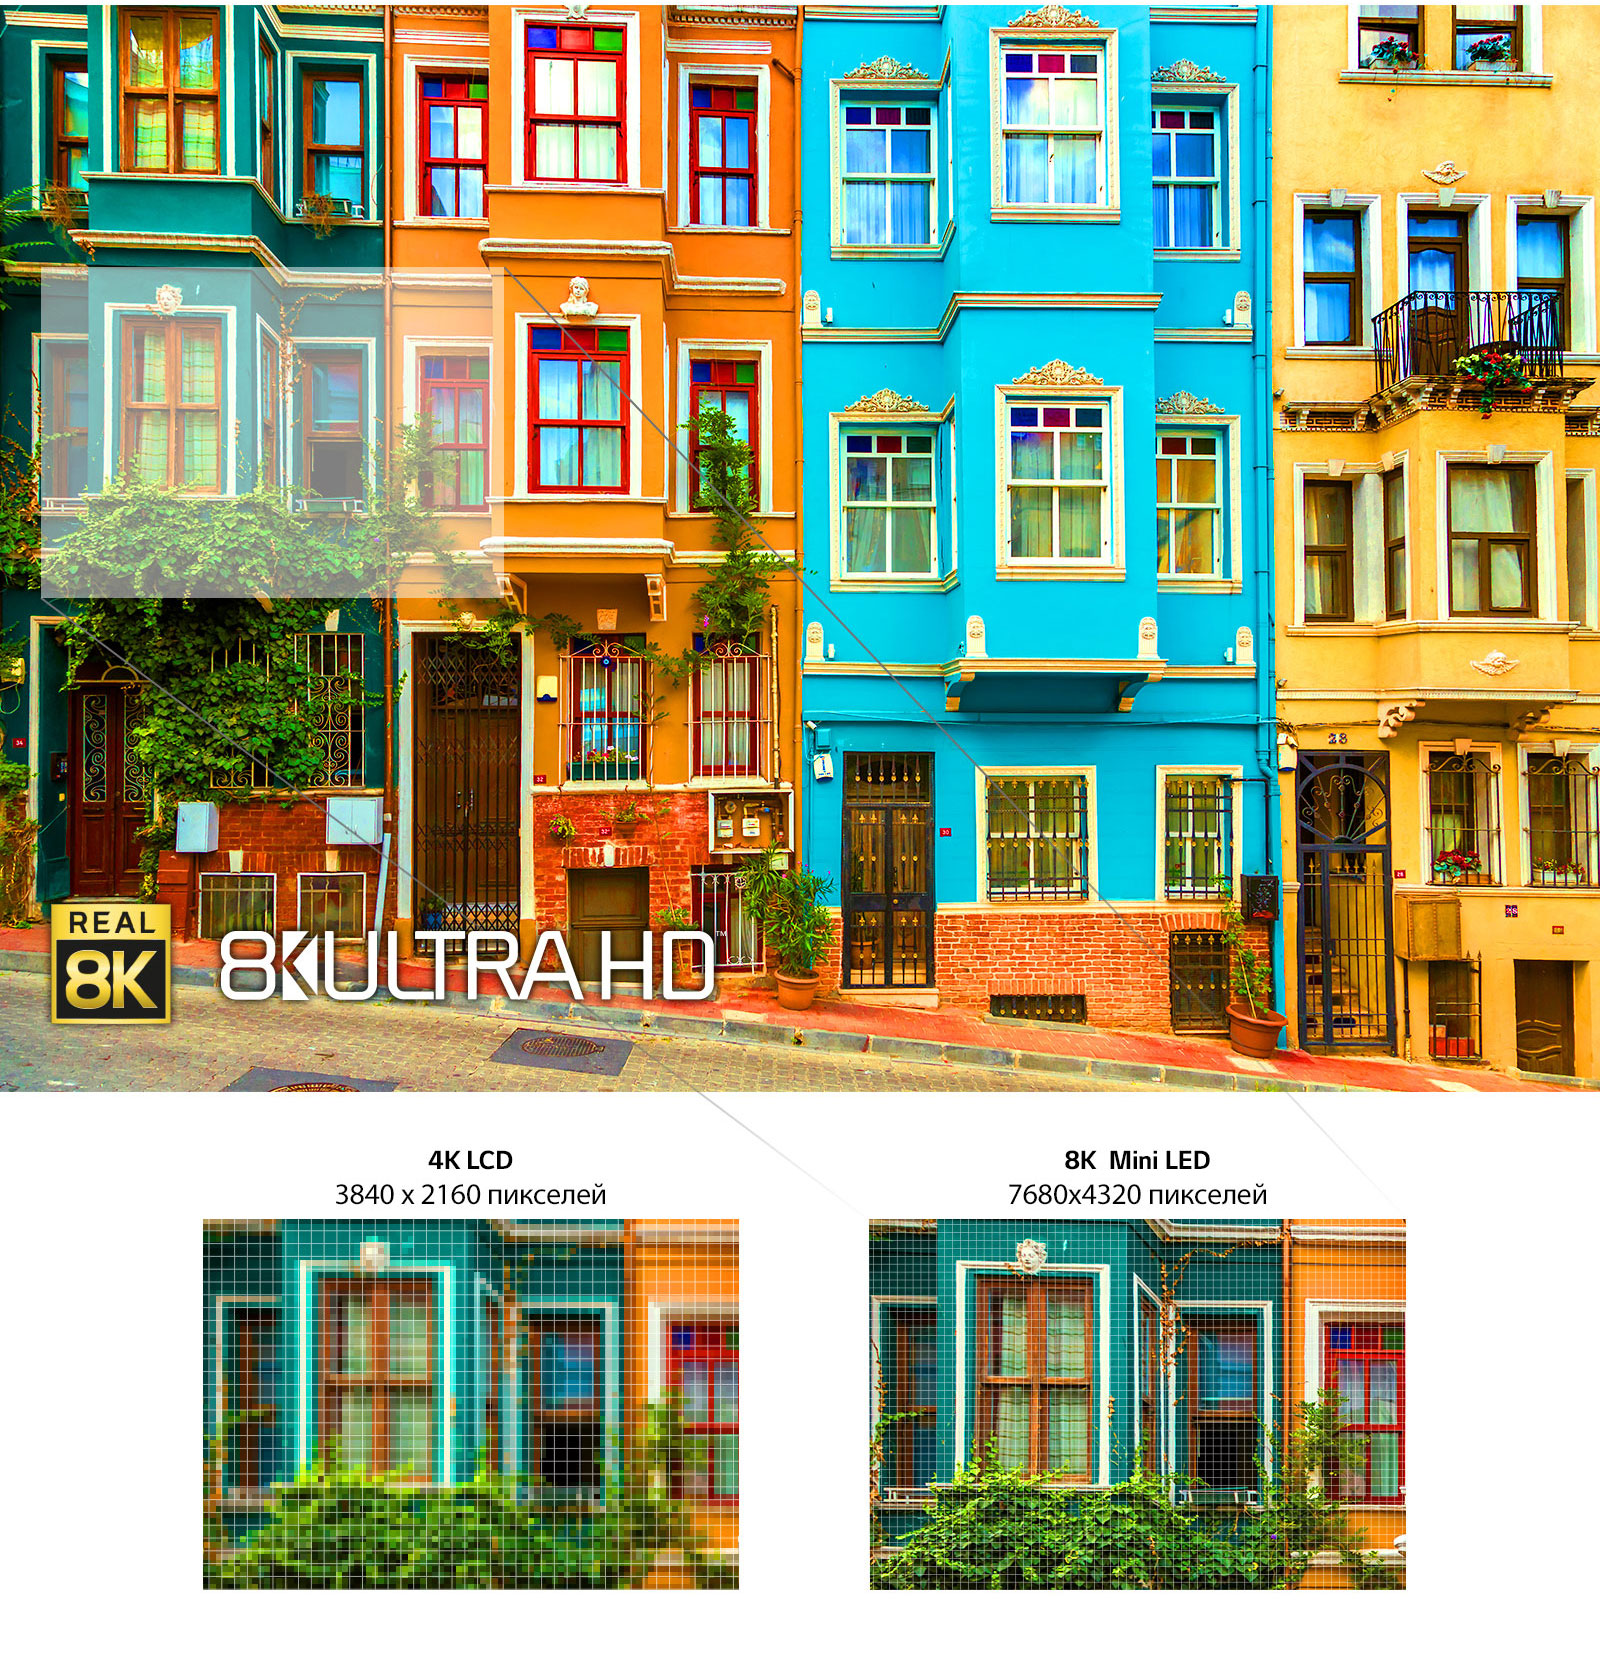 Зображення ряду яскравих багатоповерхових будинків Нижче показано два зменшені зображення одного з вікон, що демонструють різницю між 4K LCD та 8K Mini LED.